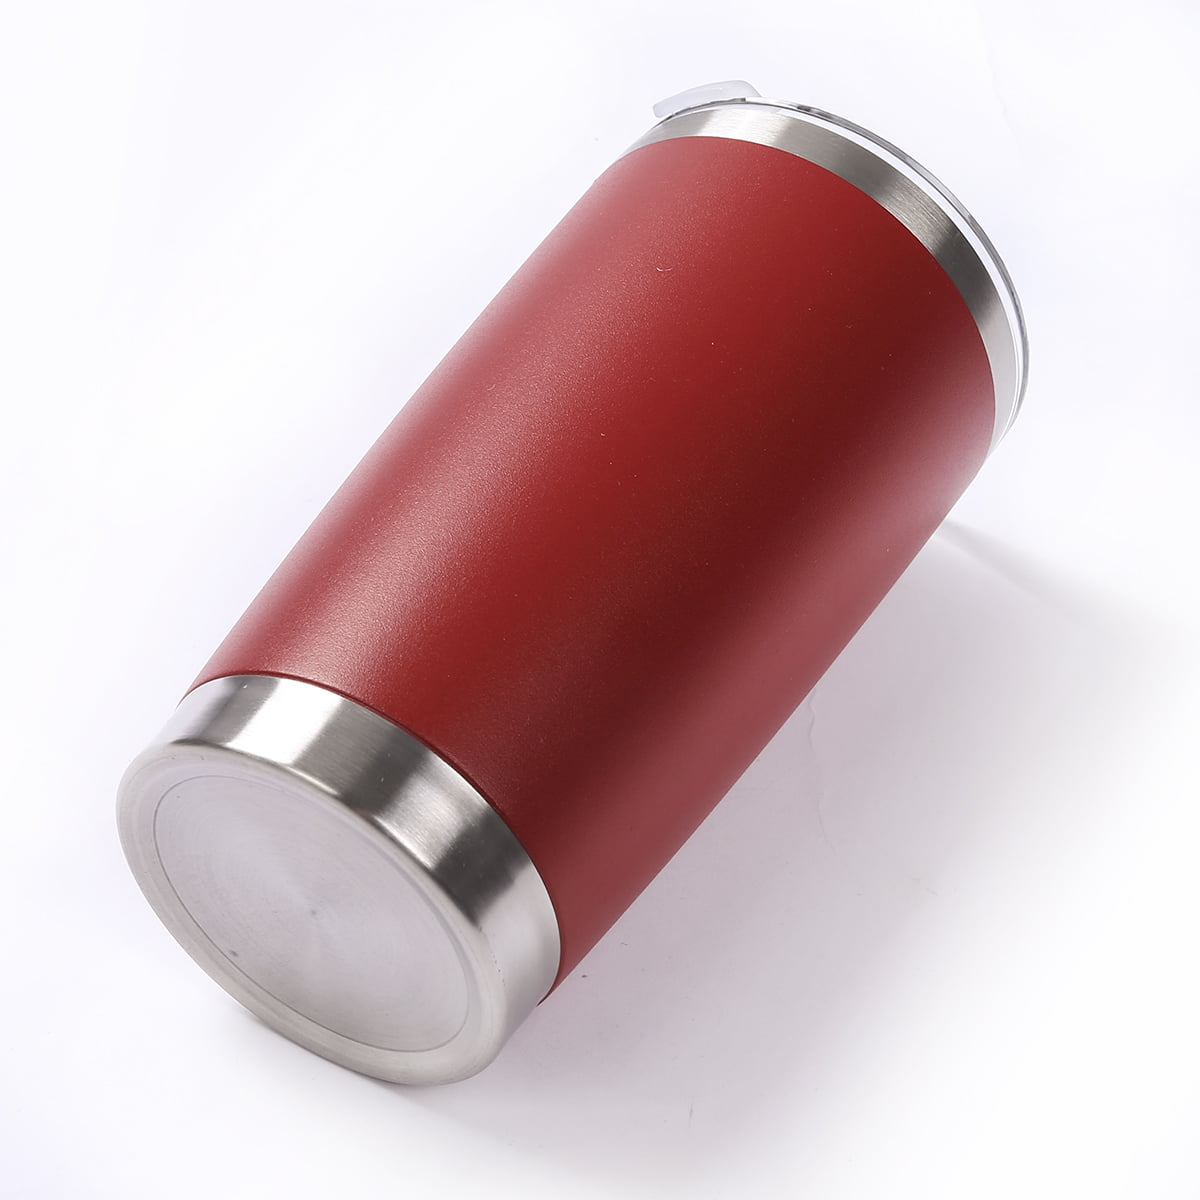 Vacuum Insulated Travel Mug. Stainless Steel, Red, 375ml - eSeasons GmbH